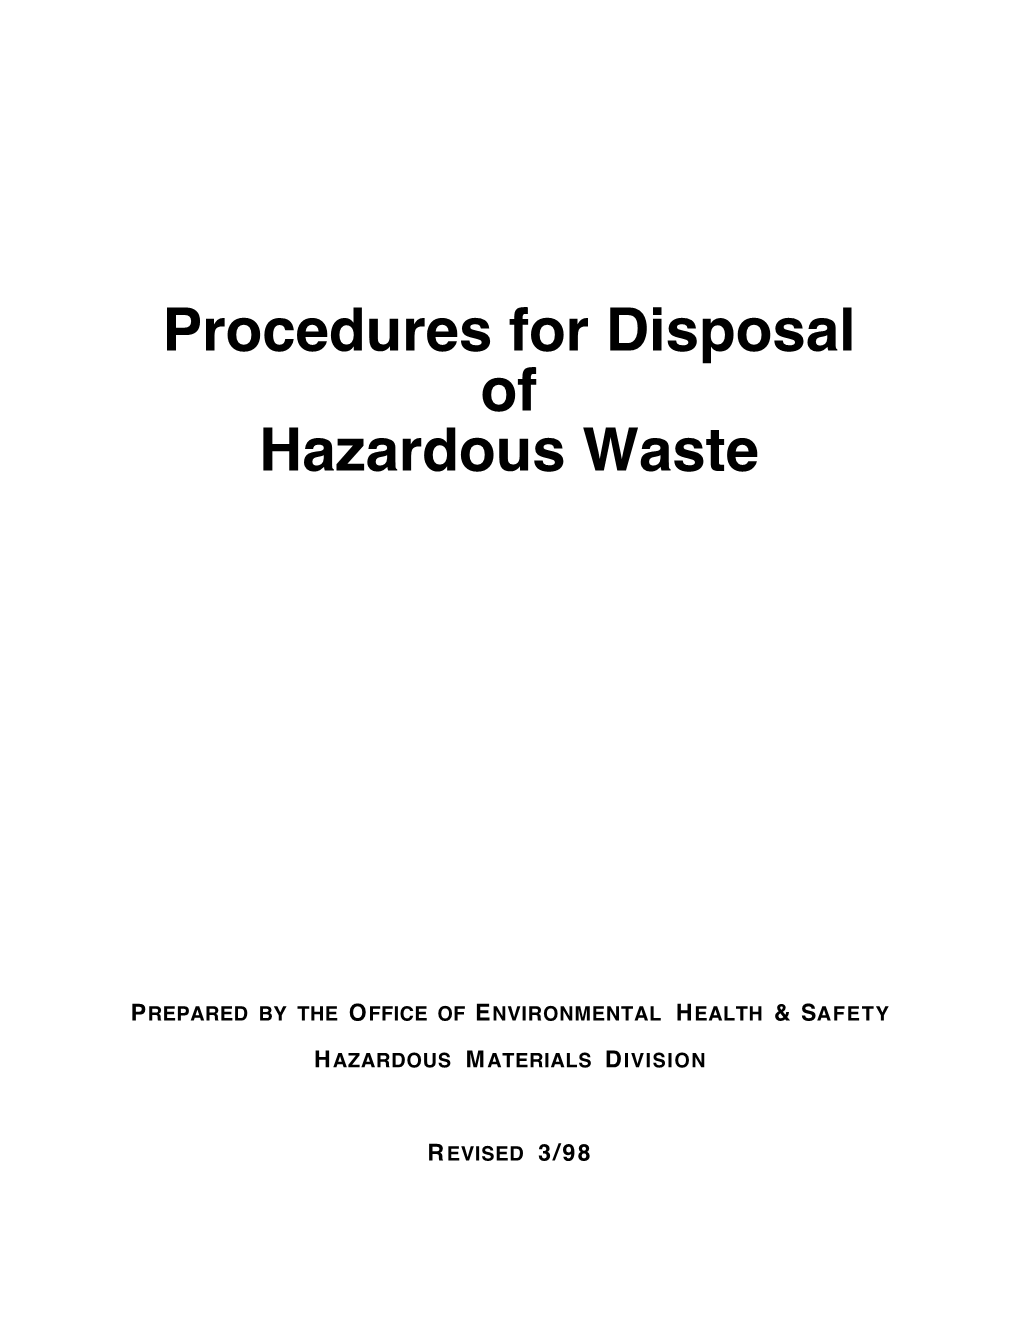 Haz Waste Procedures (03/98)